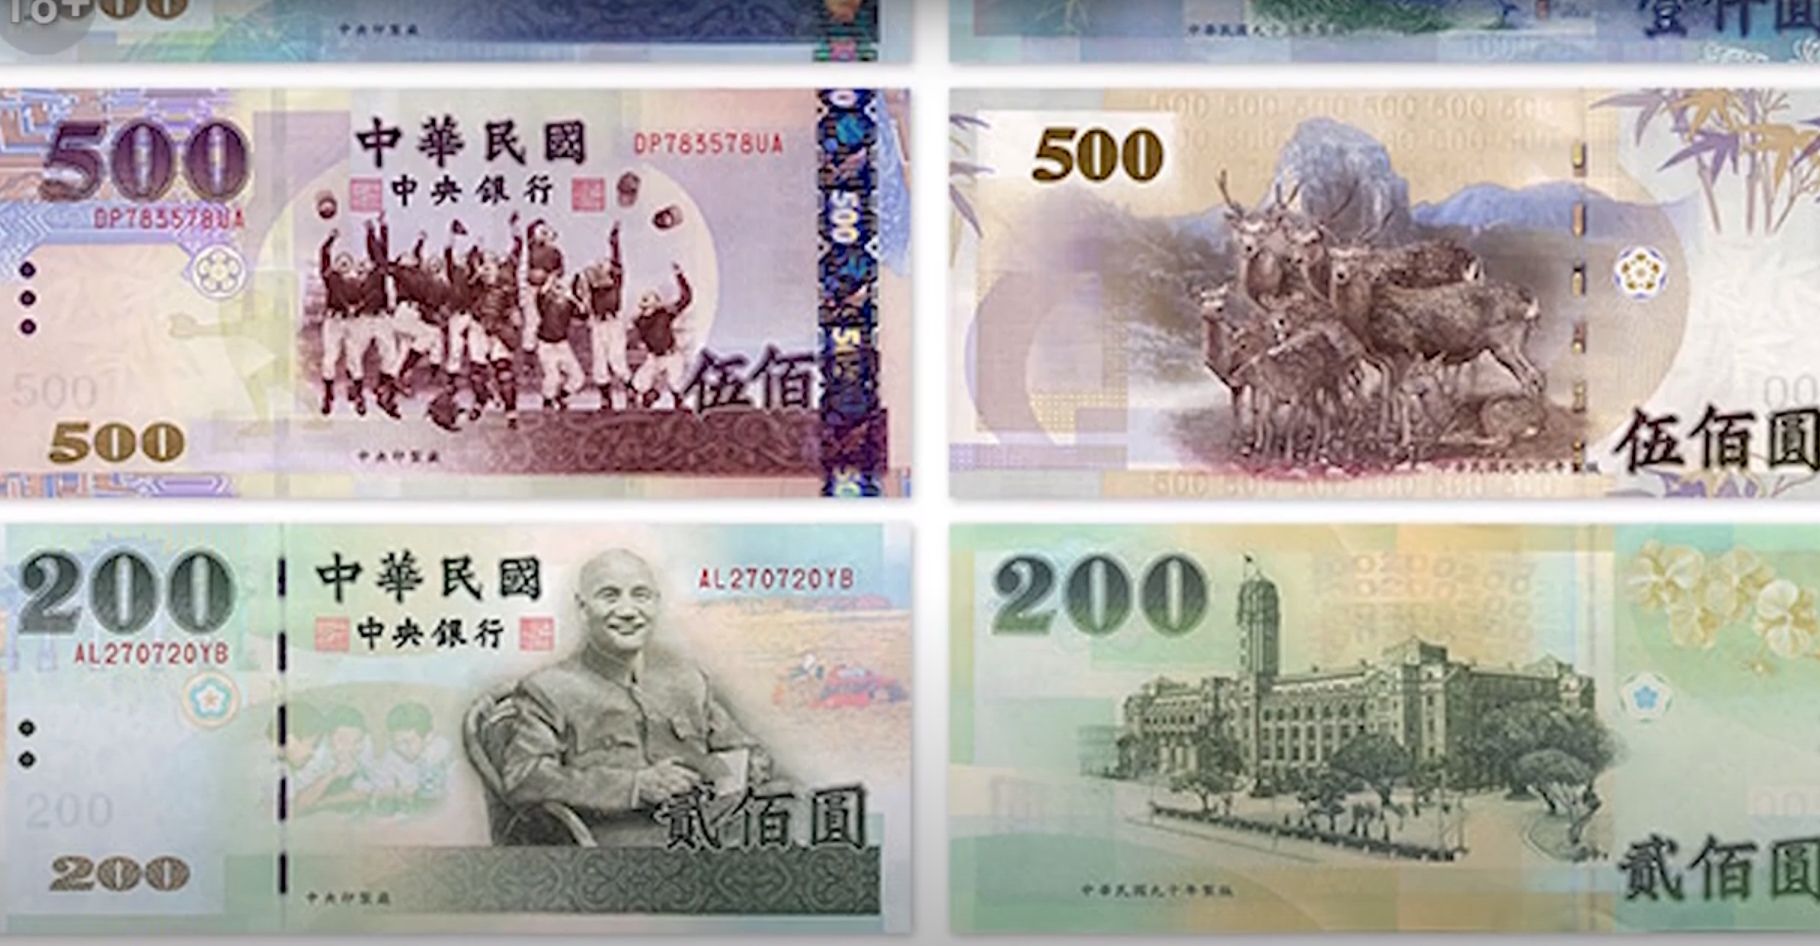 Обмен валюты тайваньский доллар прогнозы о биткоине и курсе новости